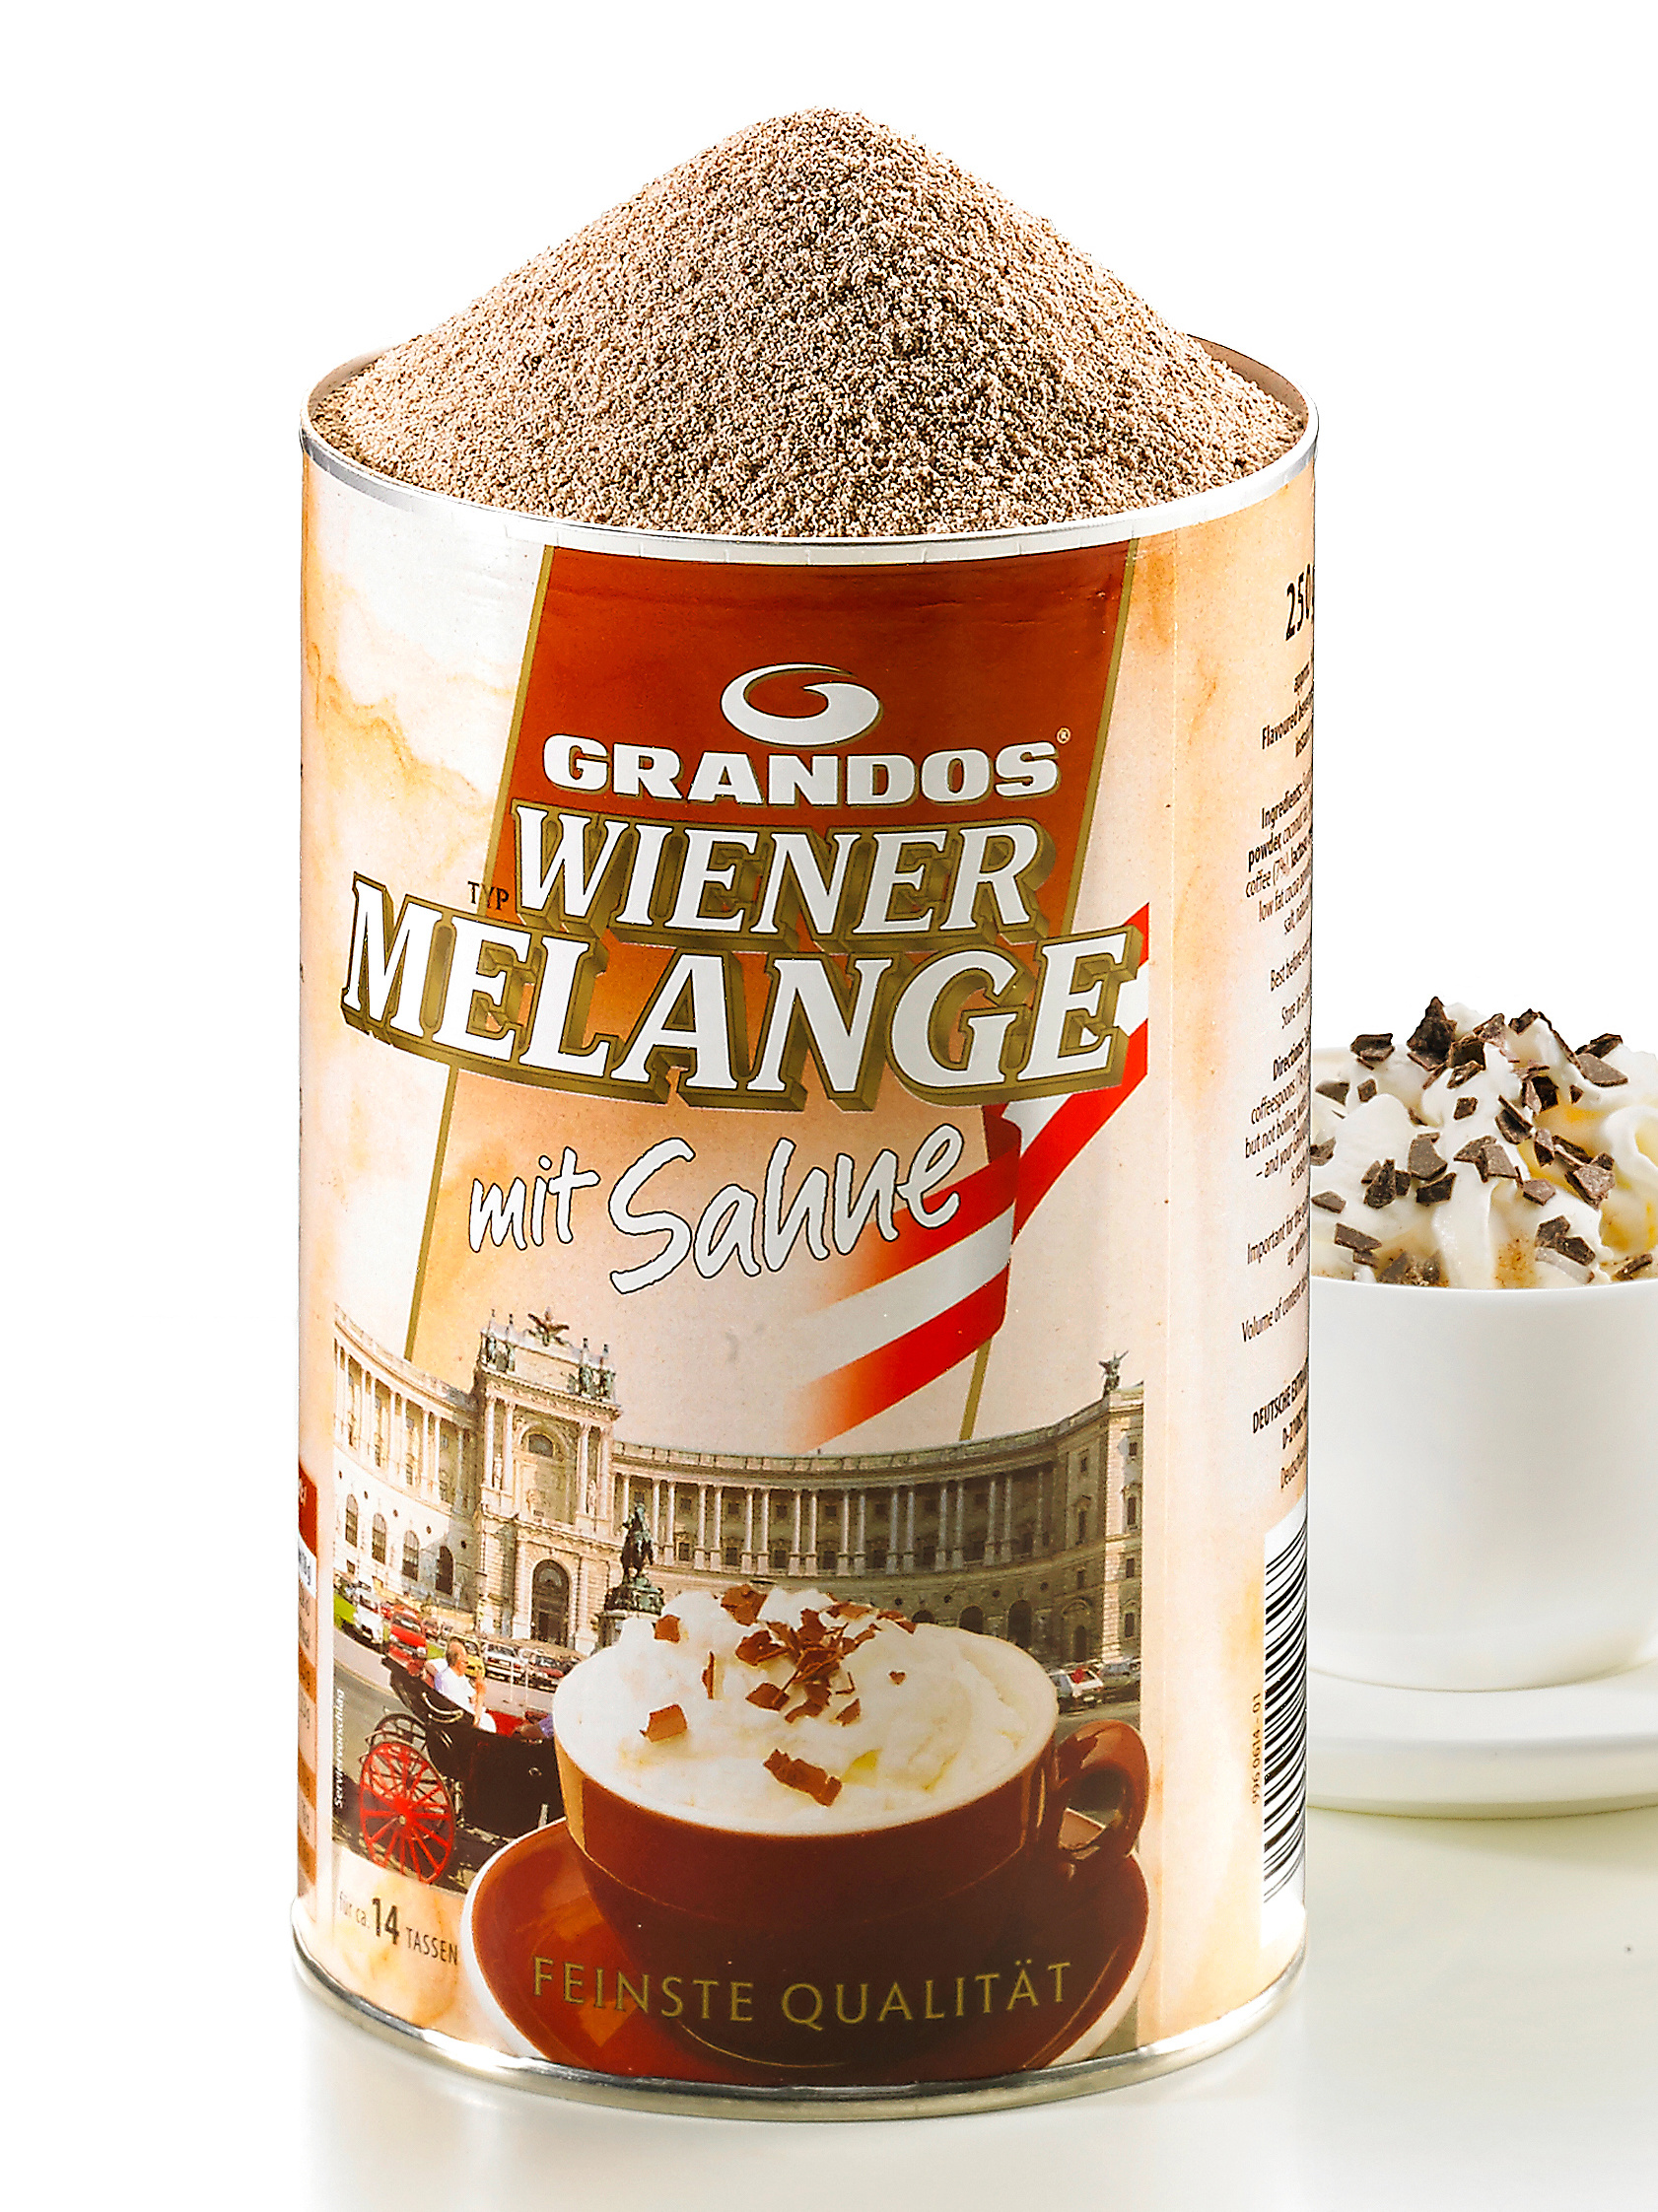 Wiener Melange